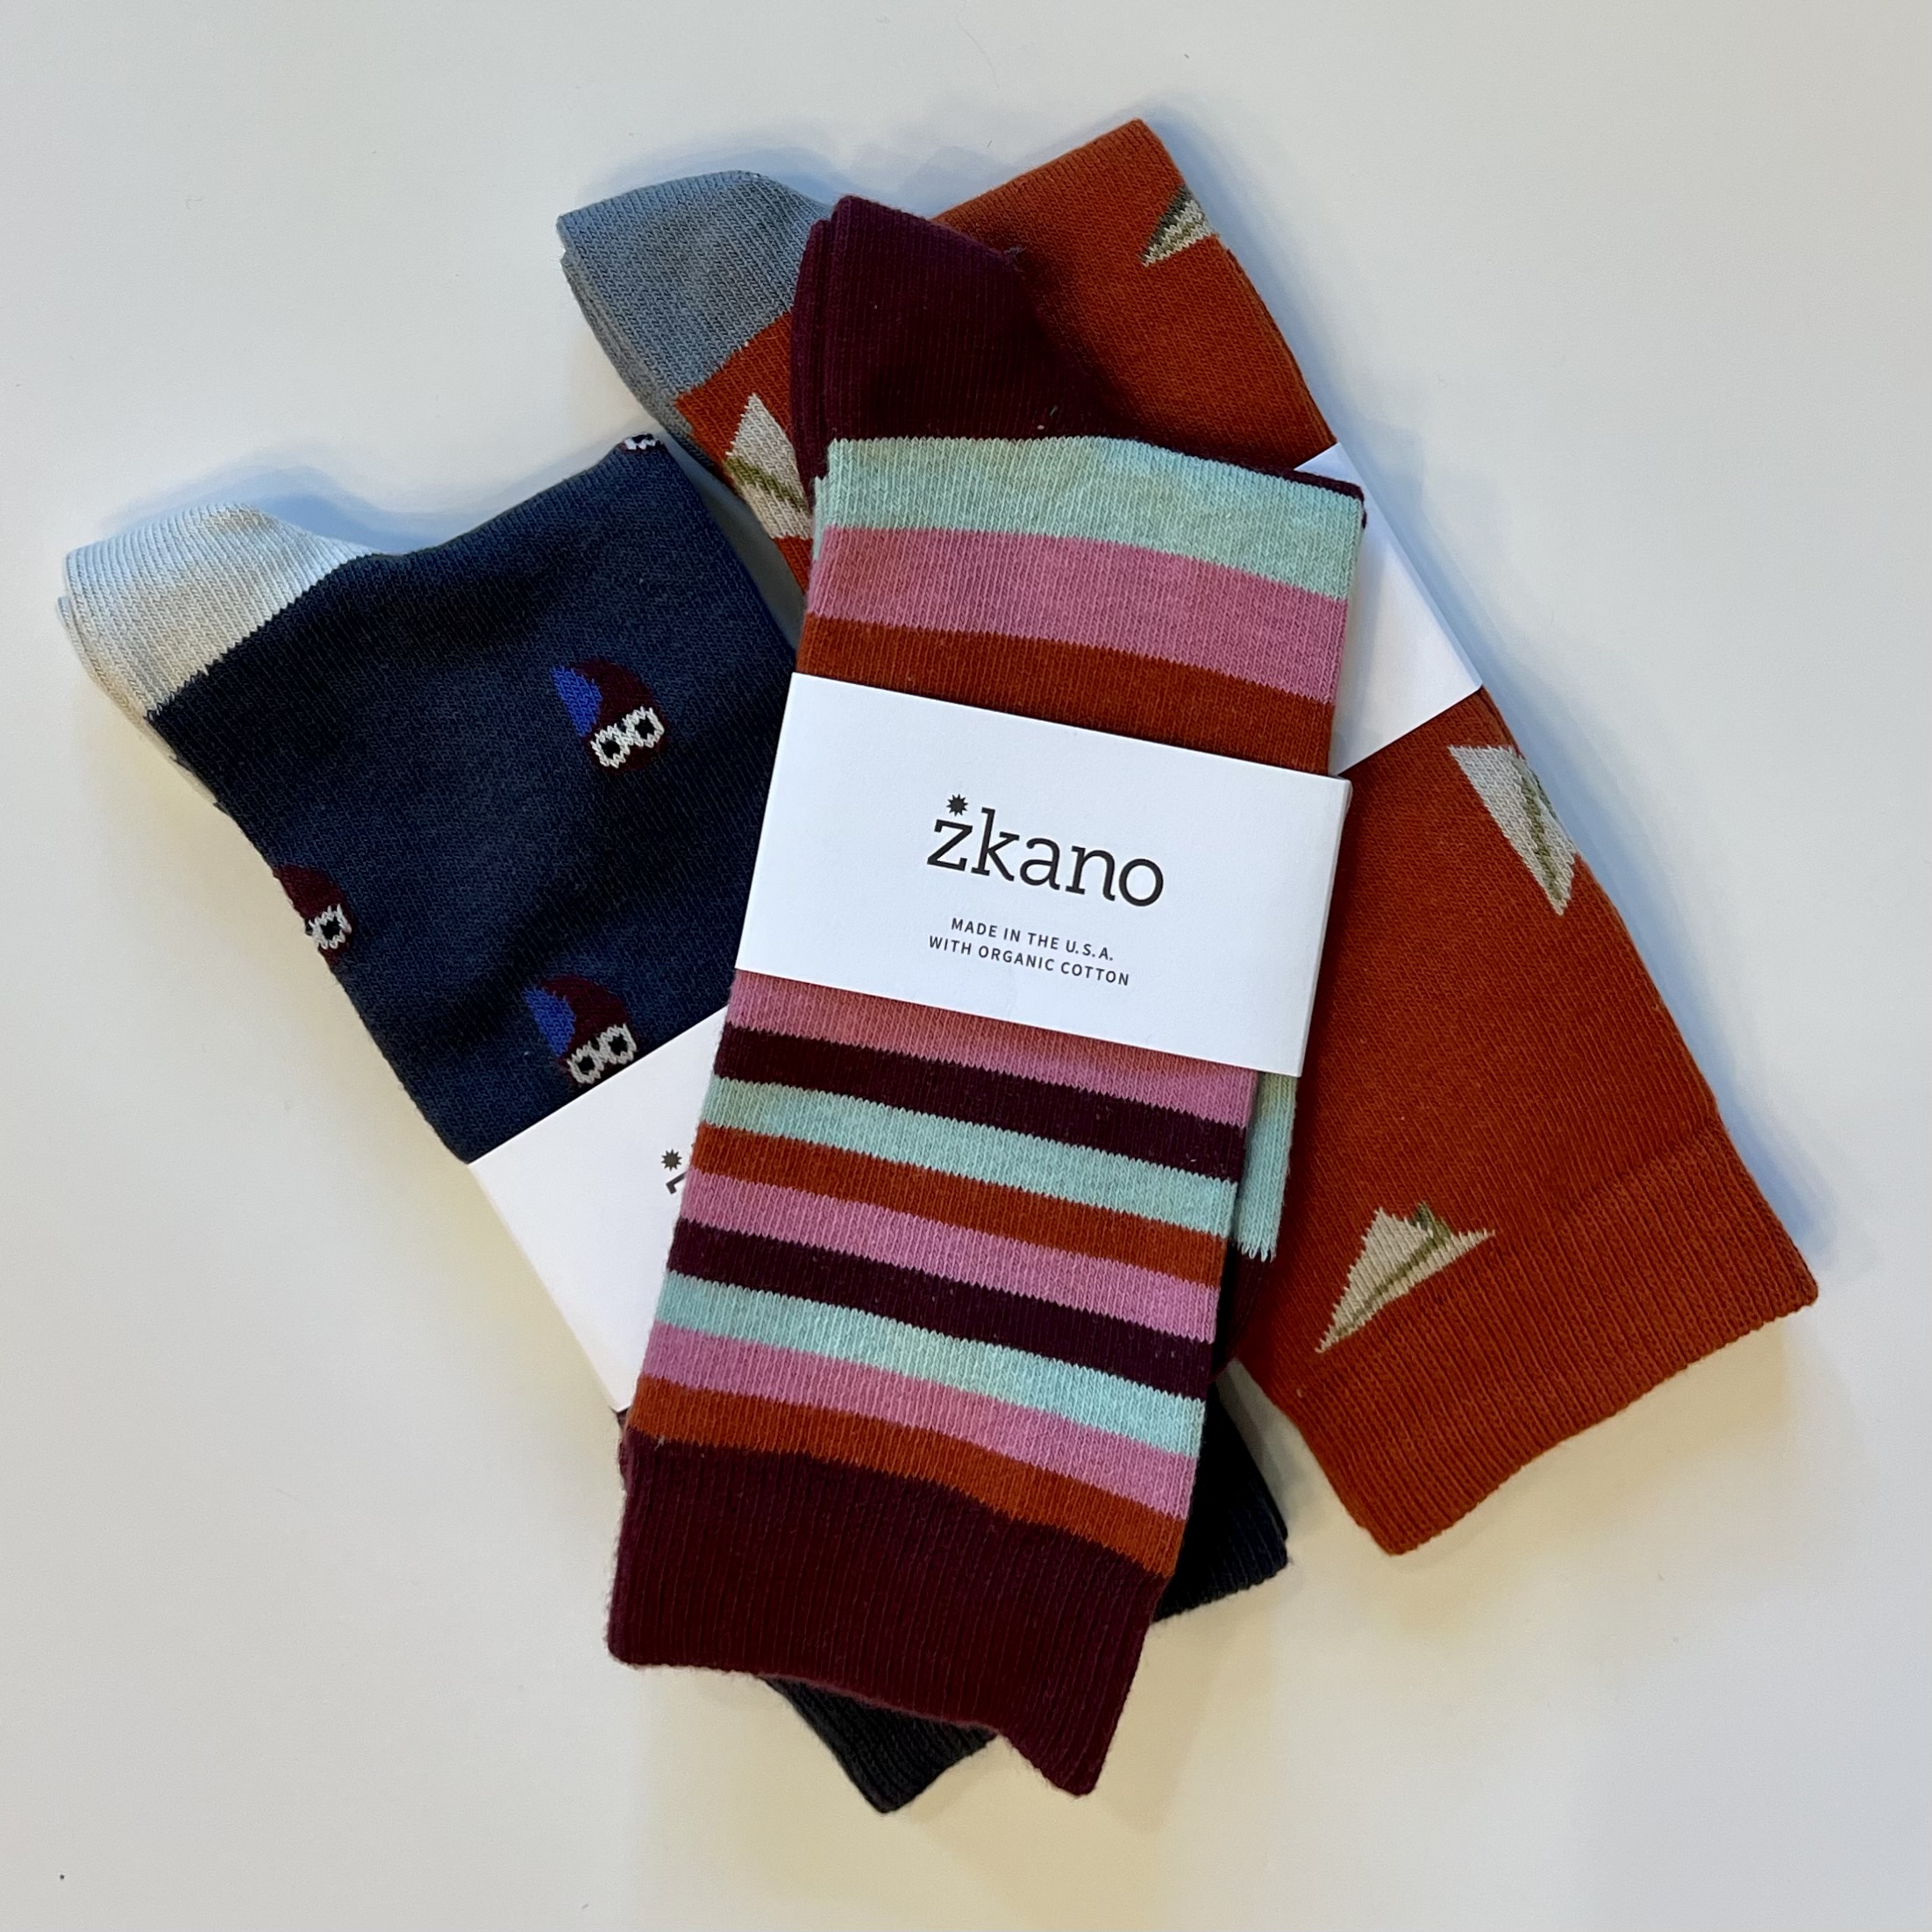 3 pairs of zkano socks